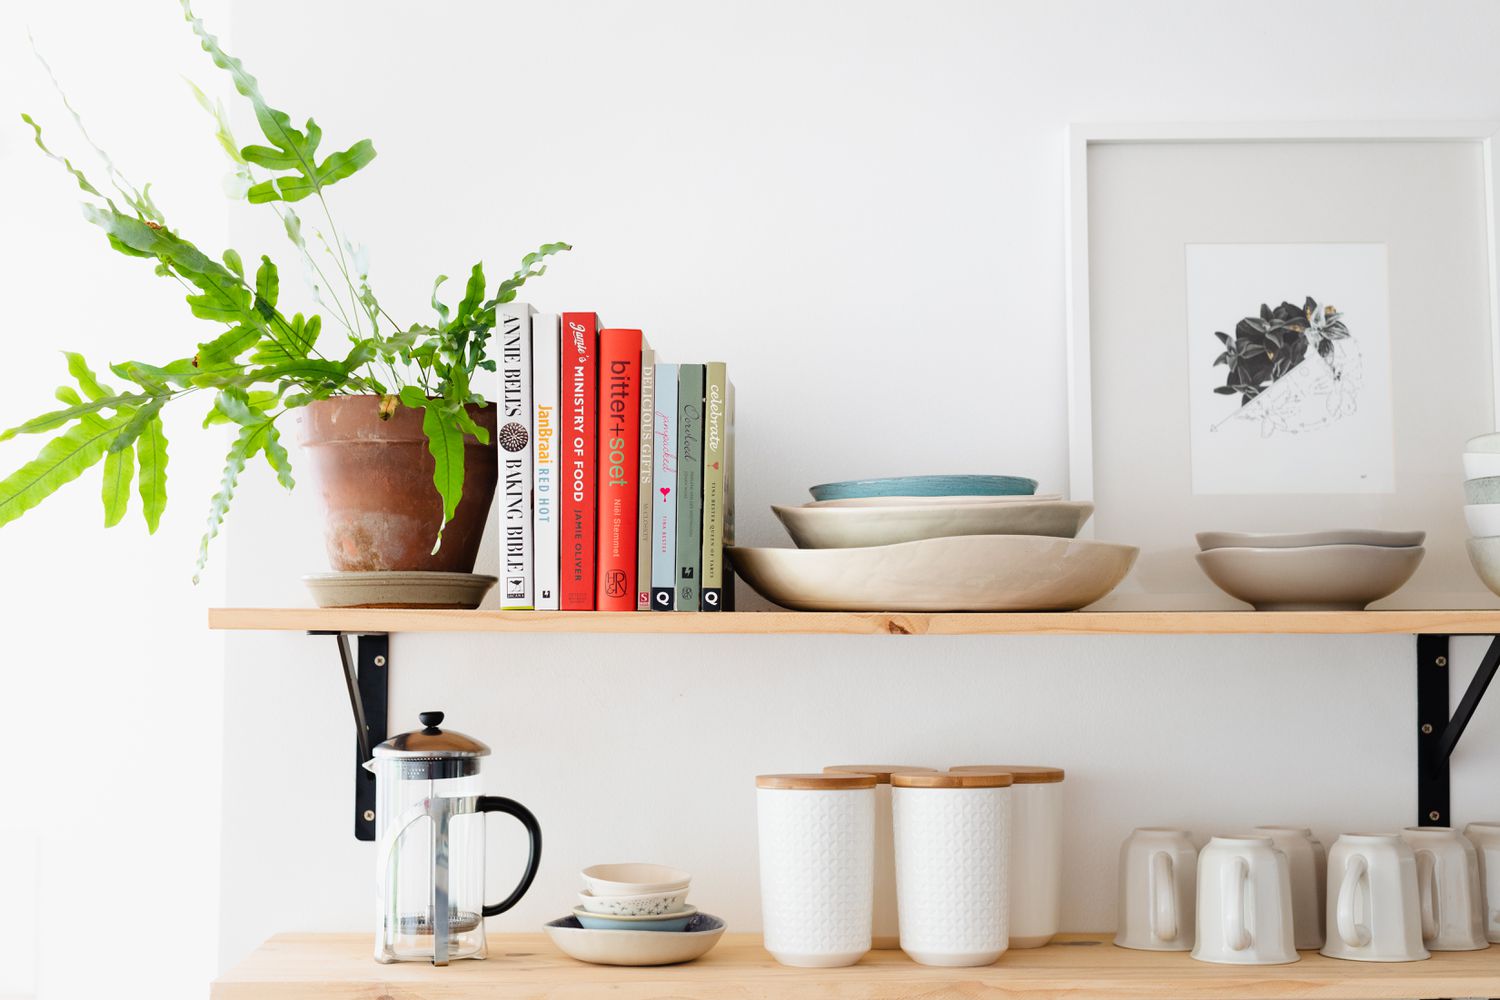 Estanterías de madera que muestran libros de cocina y plantas de interior junto a utensilios de cocina y cafetera